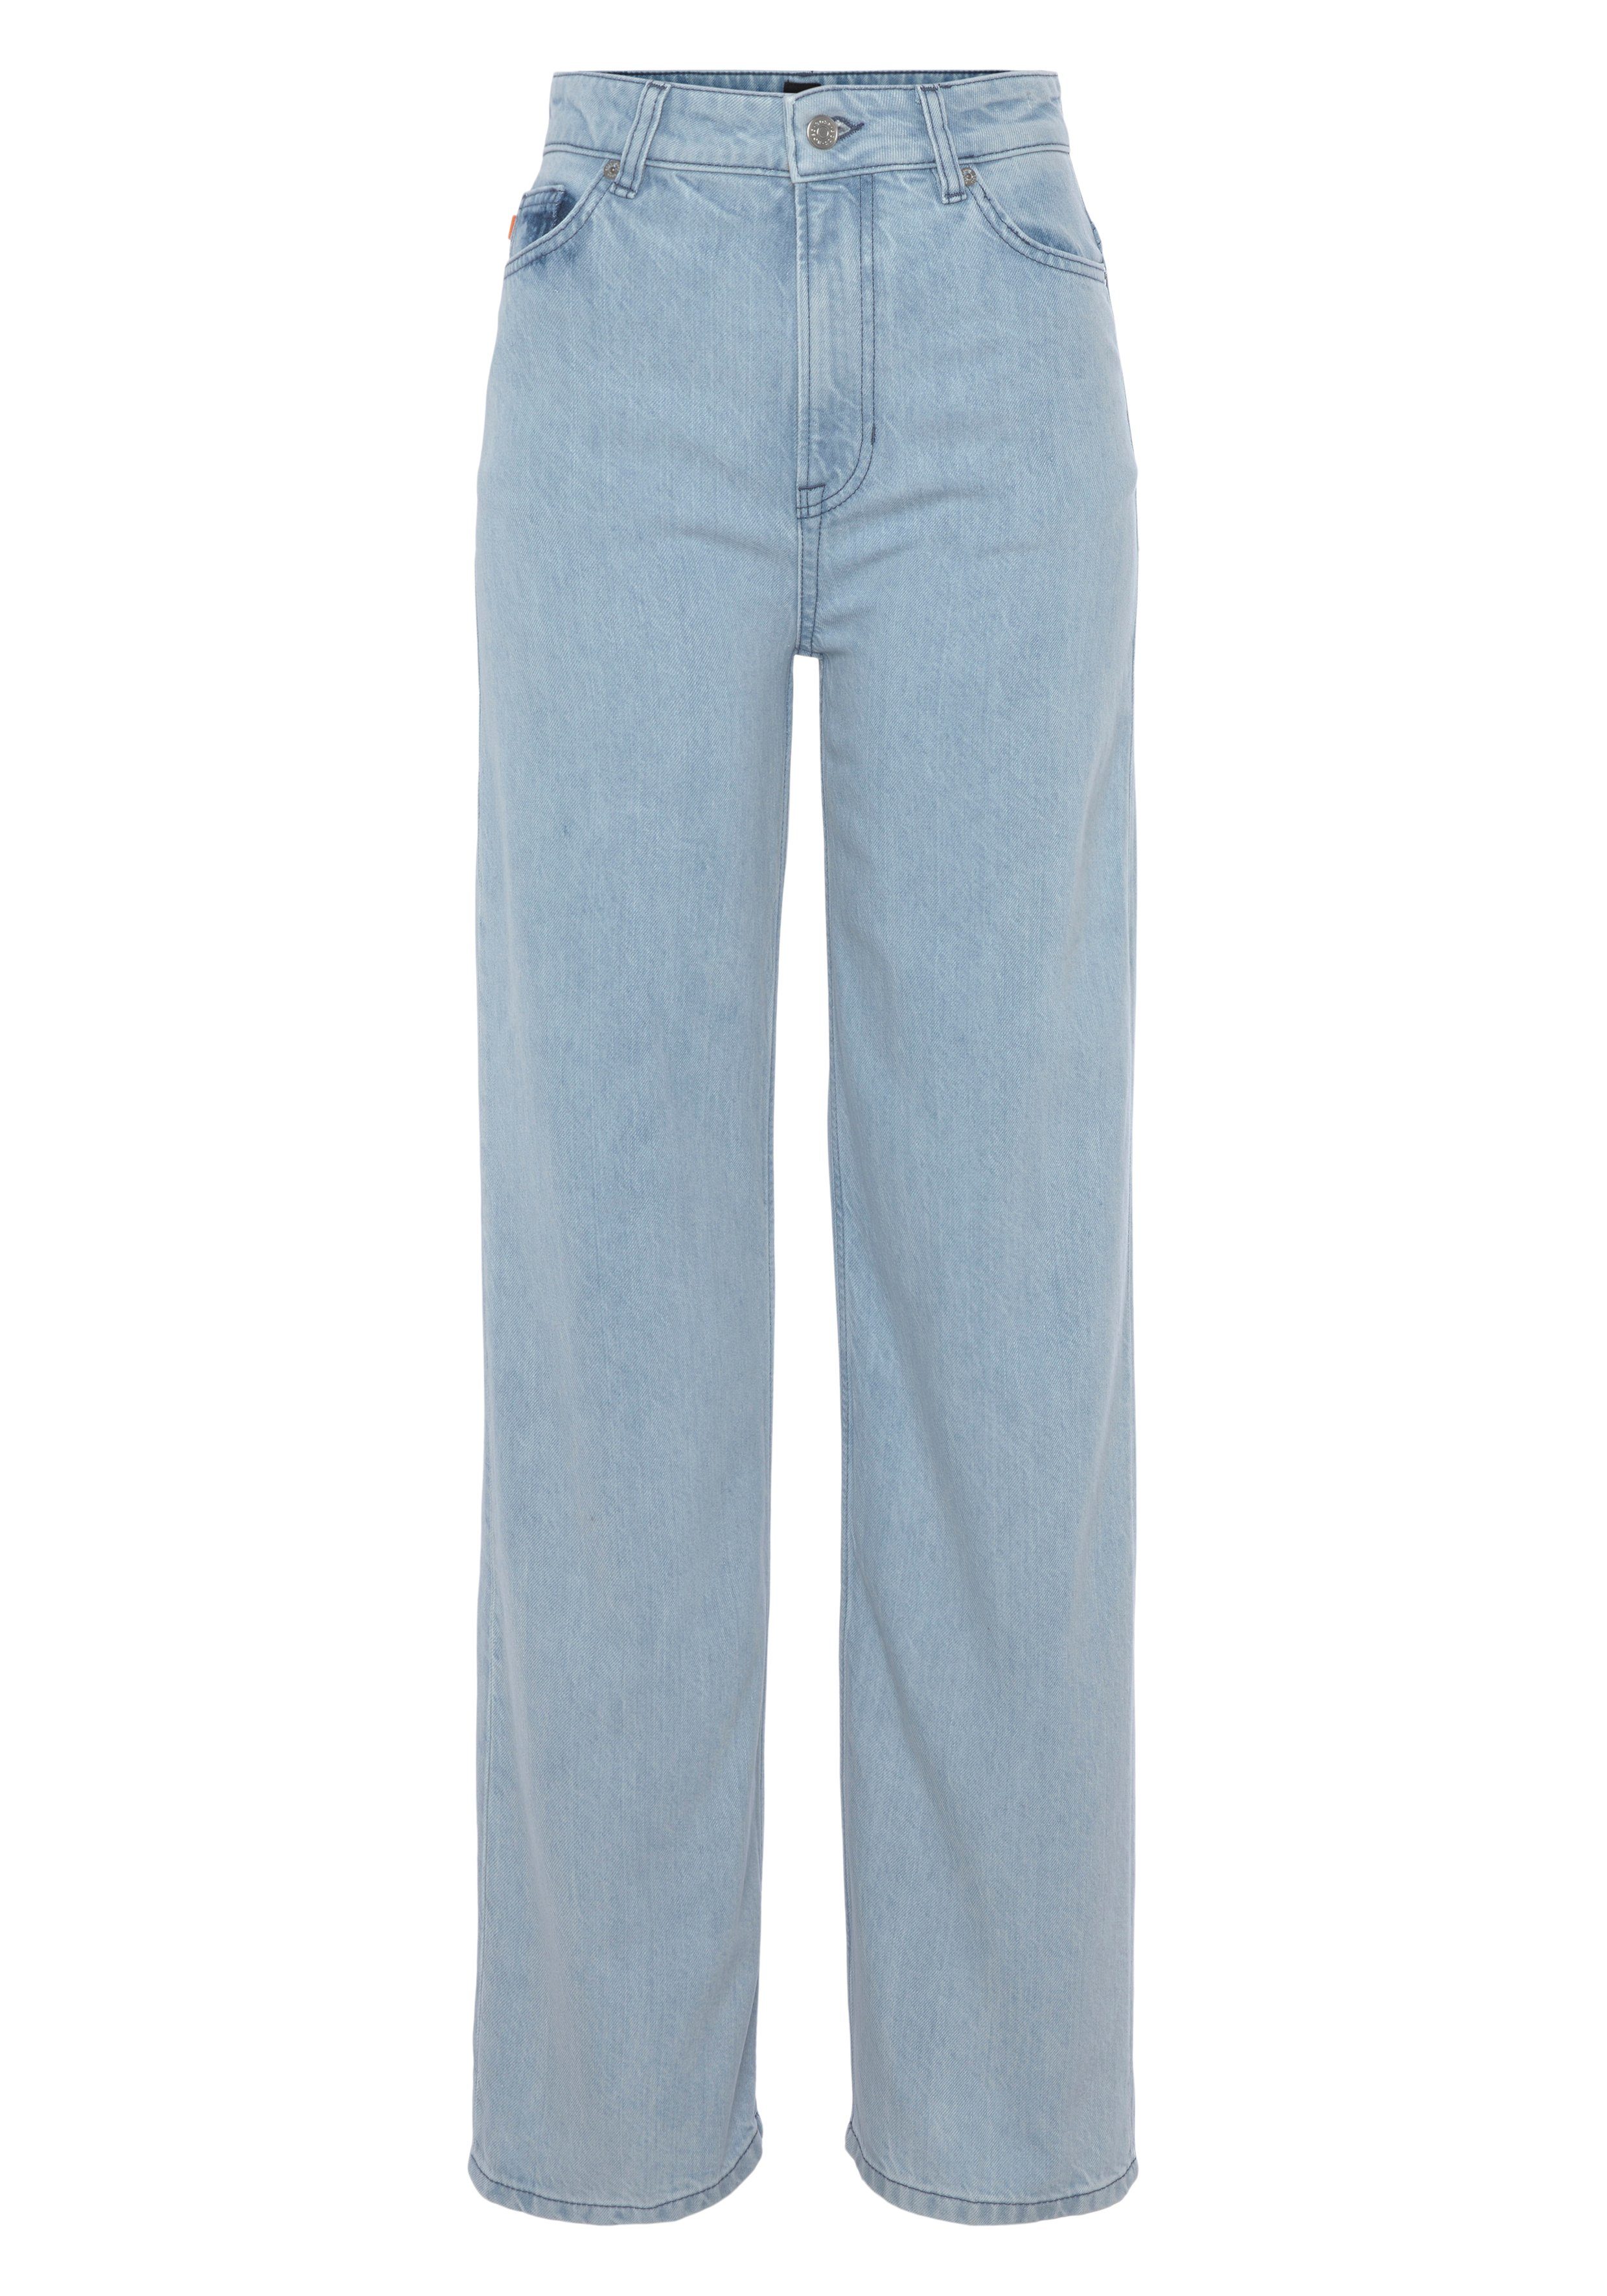 BOSS ORANGE Weite Jeans Marlene High Rise Hochbund High Waist Premium Denim Jeans im 5-Pocket-Style